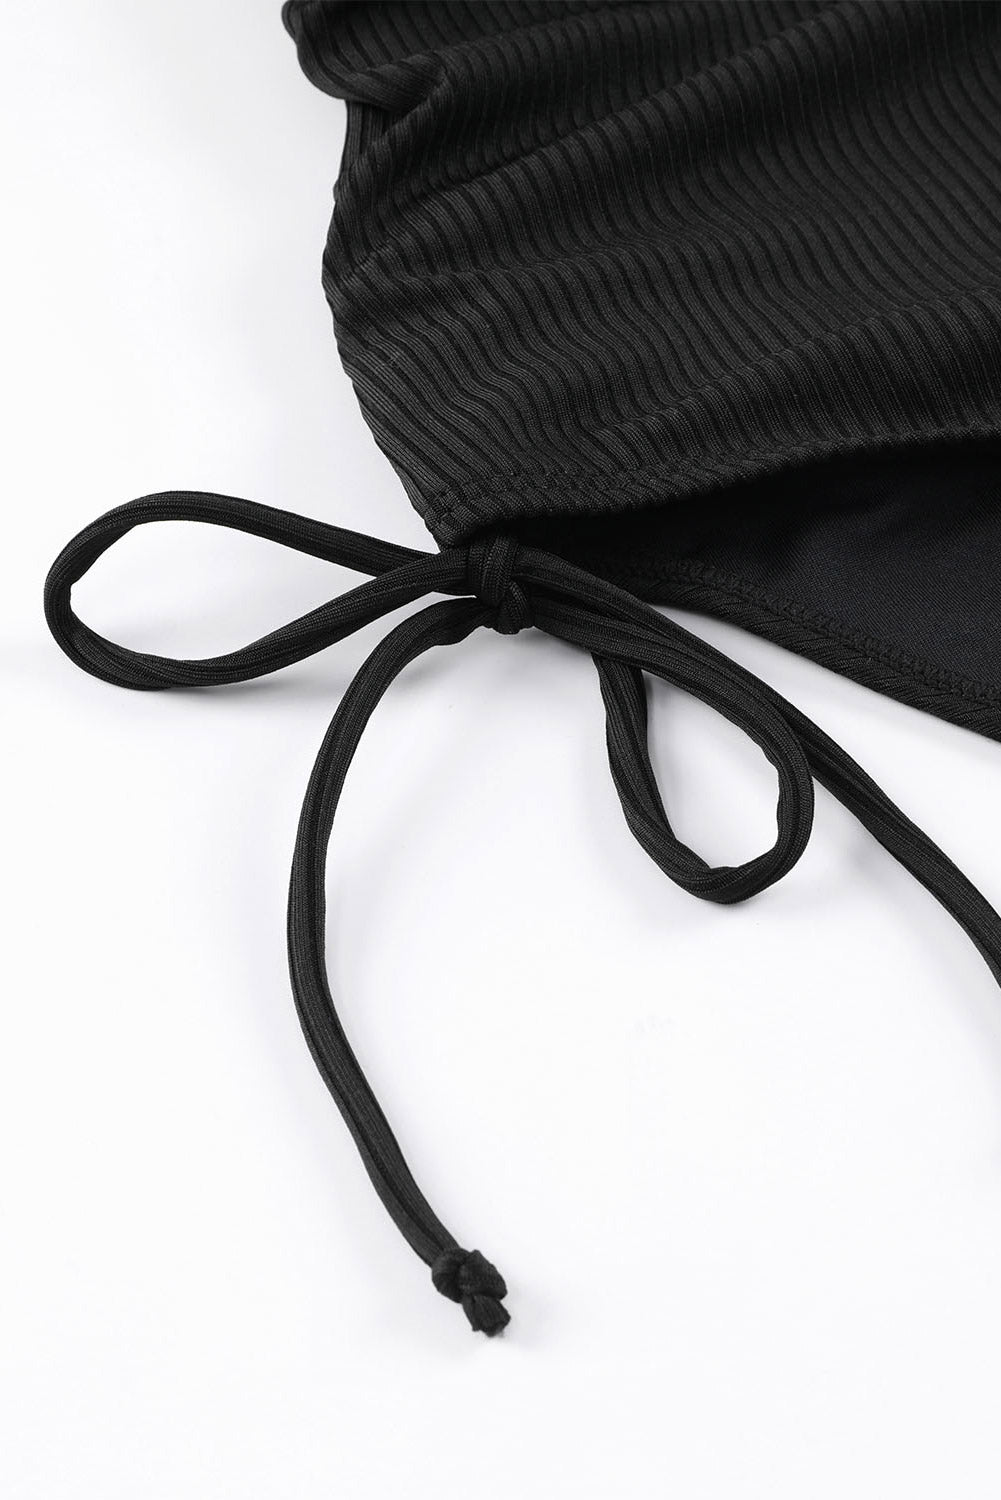 Maillot de bain une pièce en tricot côtelé noir à bretelles réglables